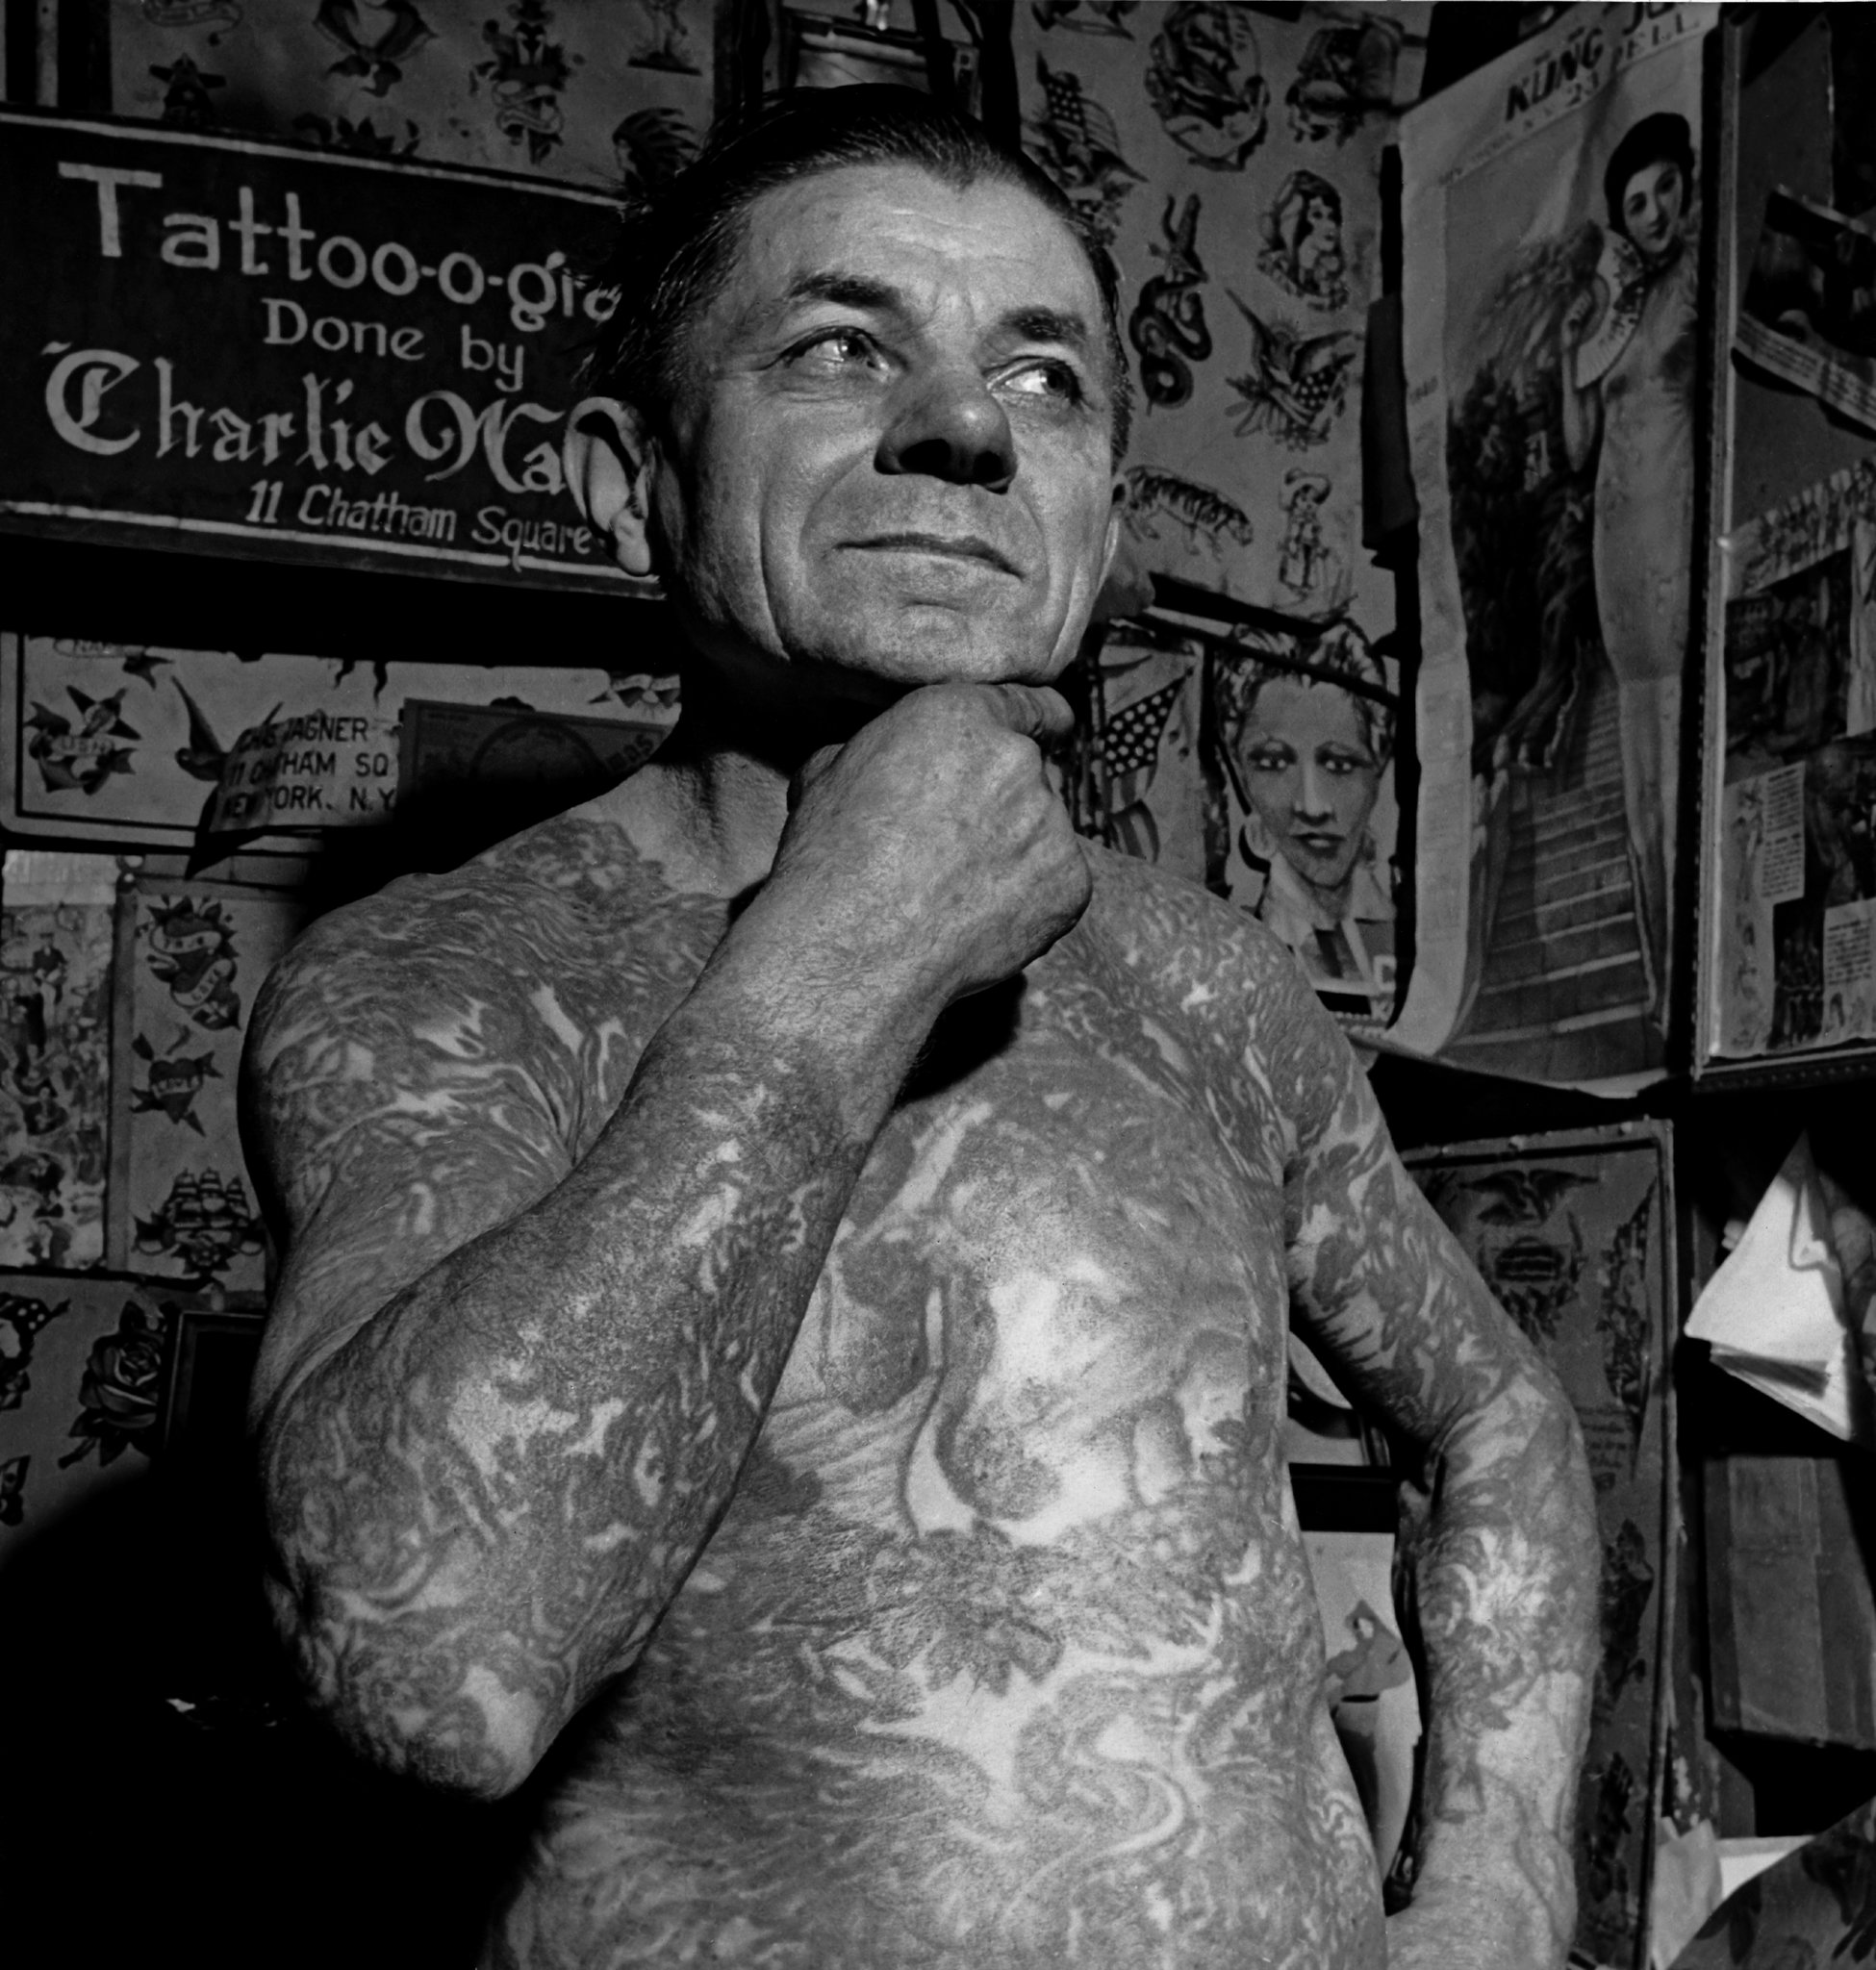 bowery tattoostyle on tattooed men